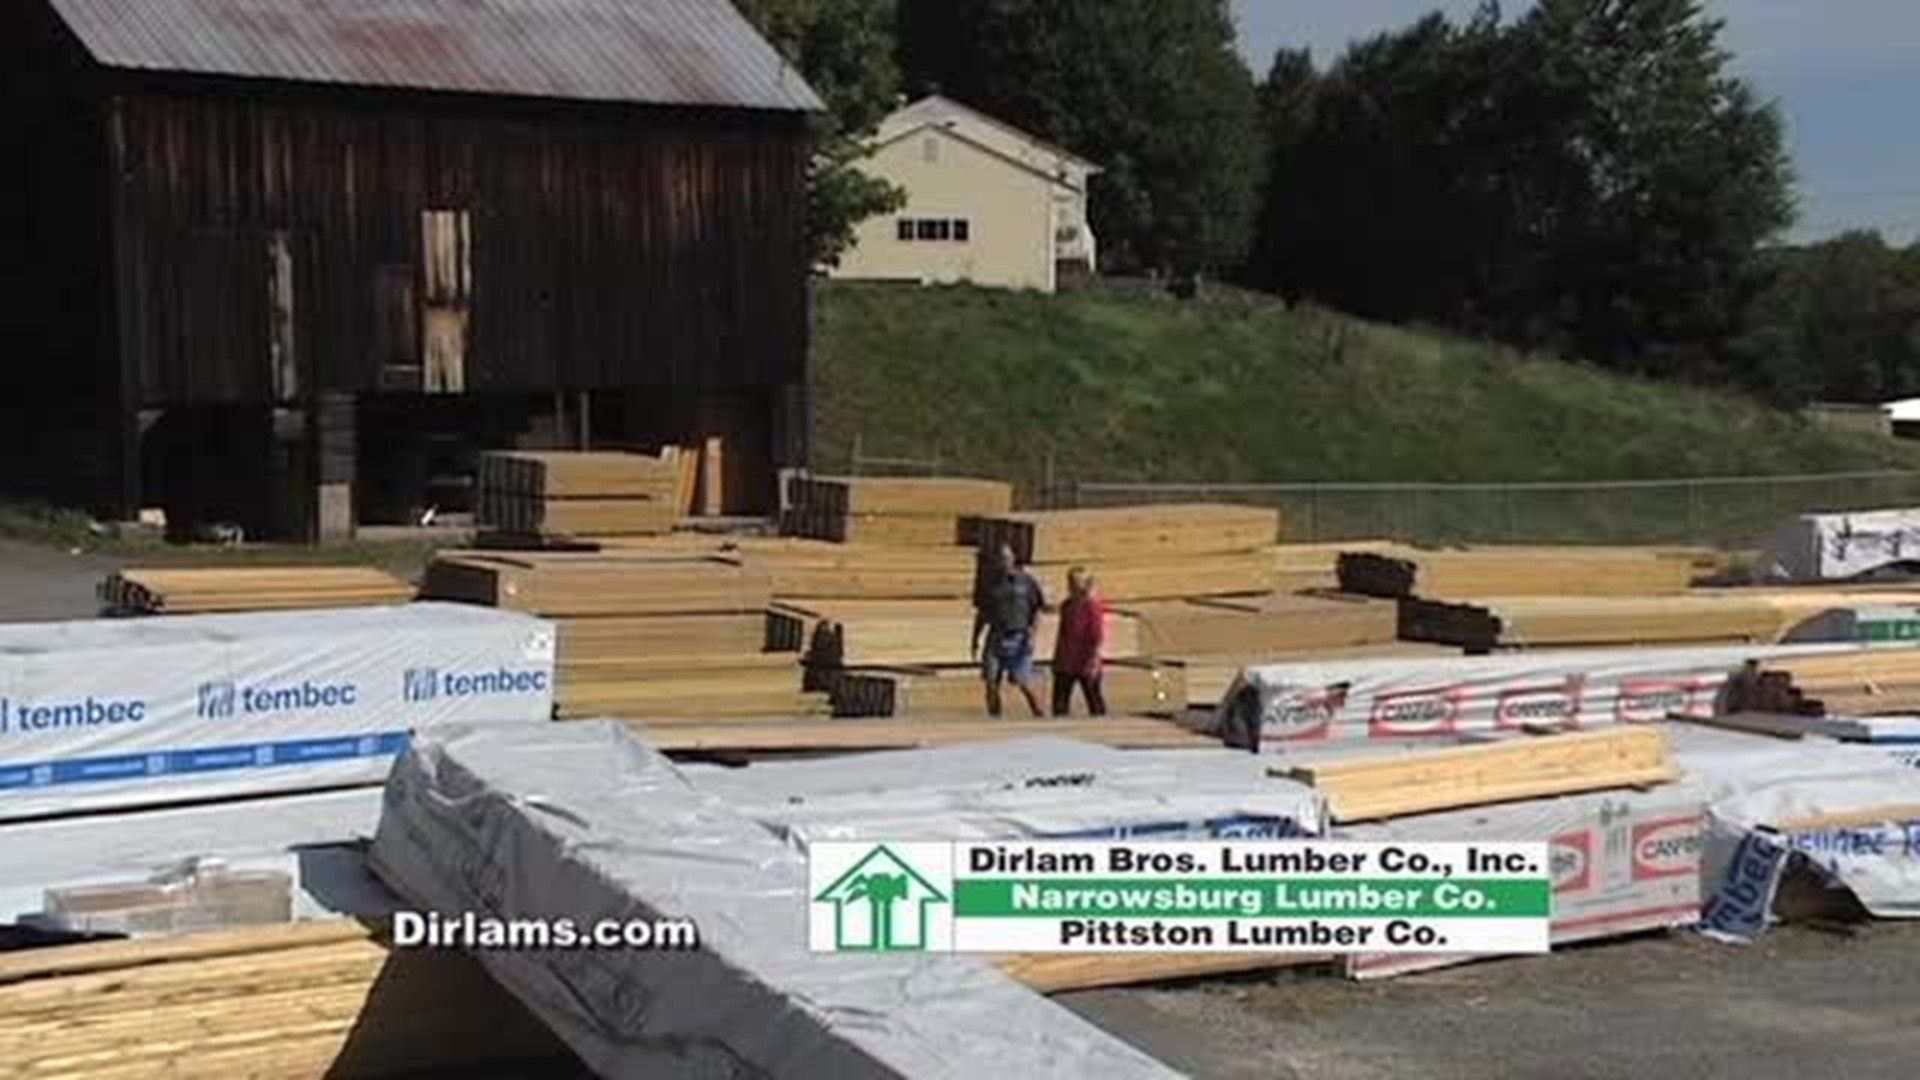 Fall Show - Dirlam Brothers Lumber